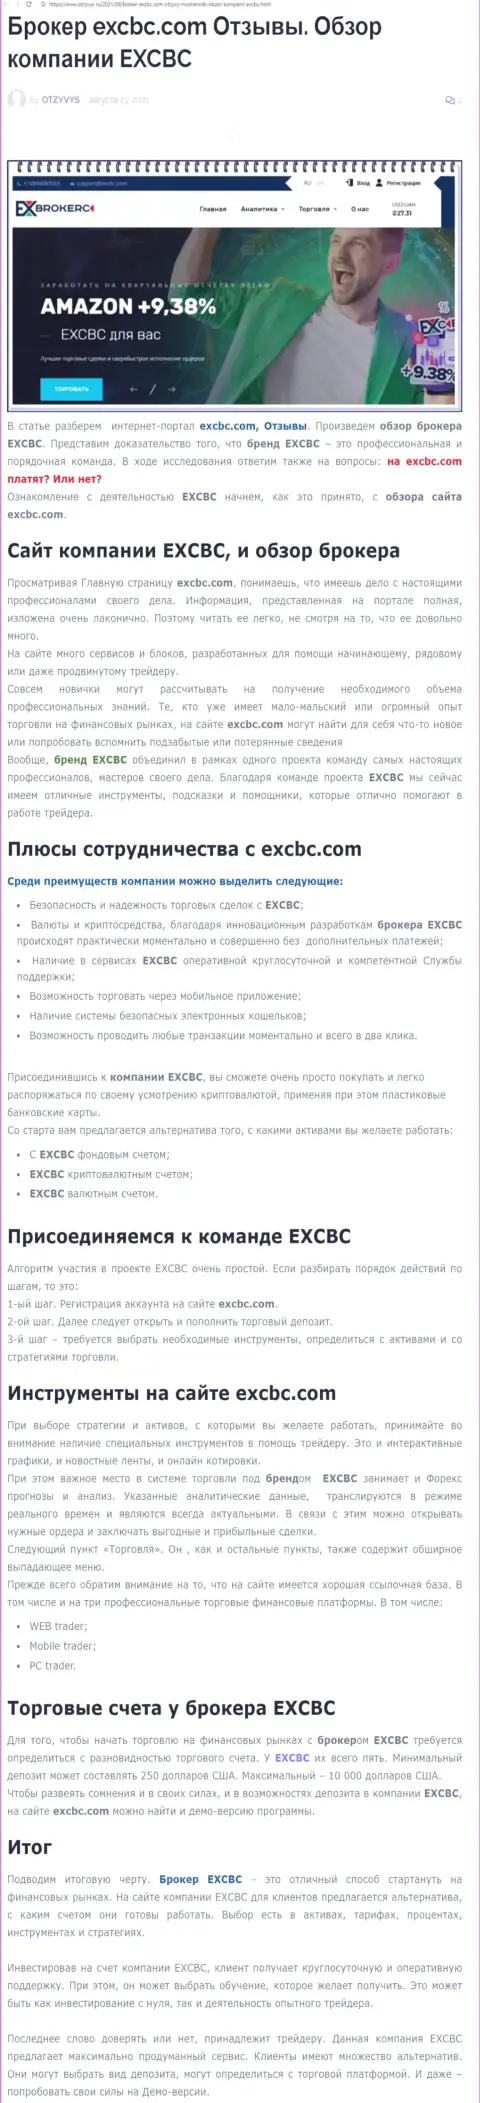 EXCBC Сom - это честная и надежная Forex дилинговая компания, об этом можно узнать из информационной статьи на сайте otzyvys ru